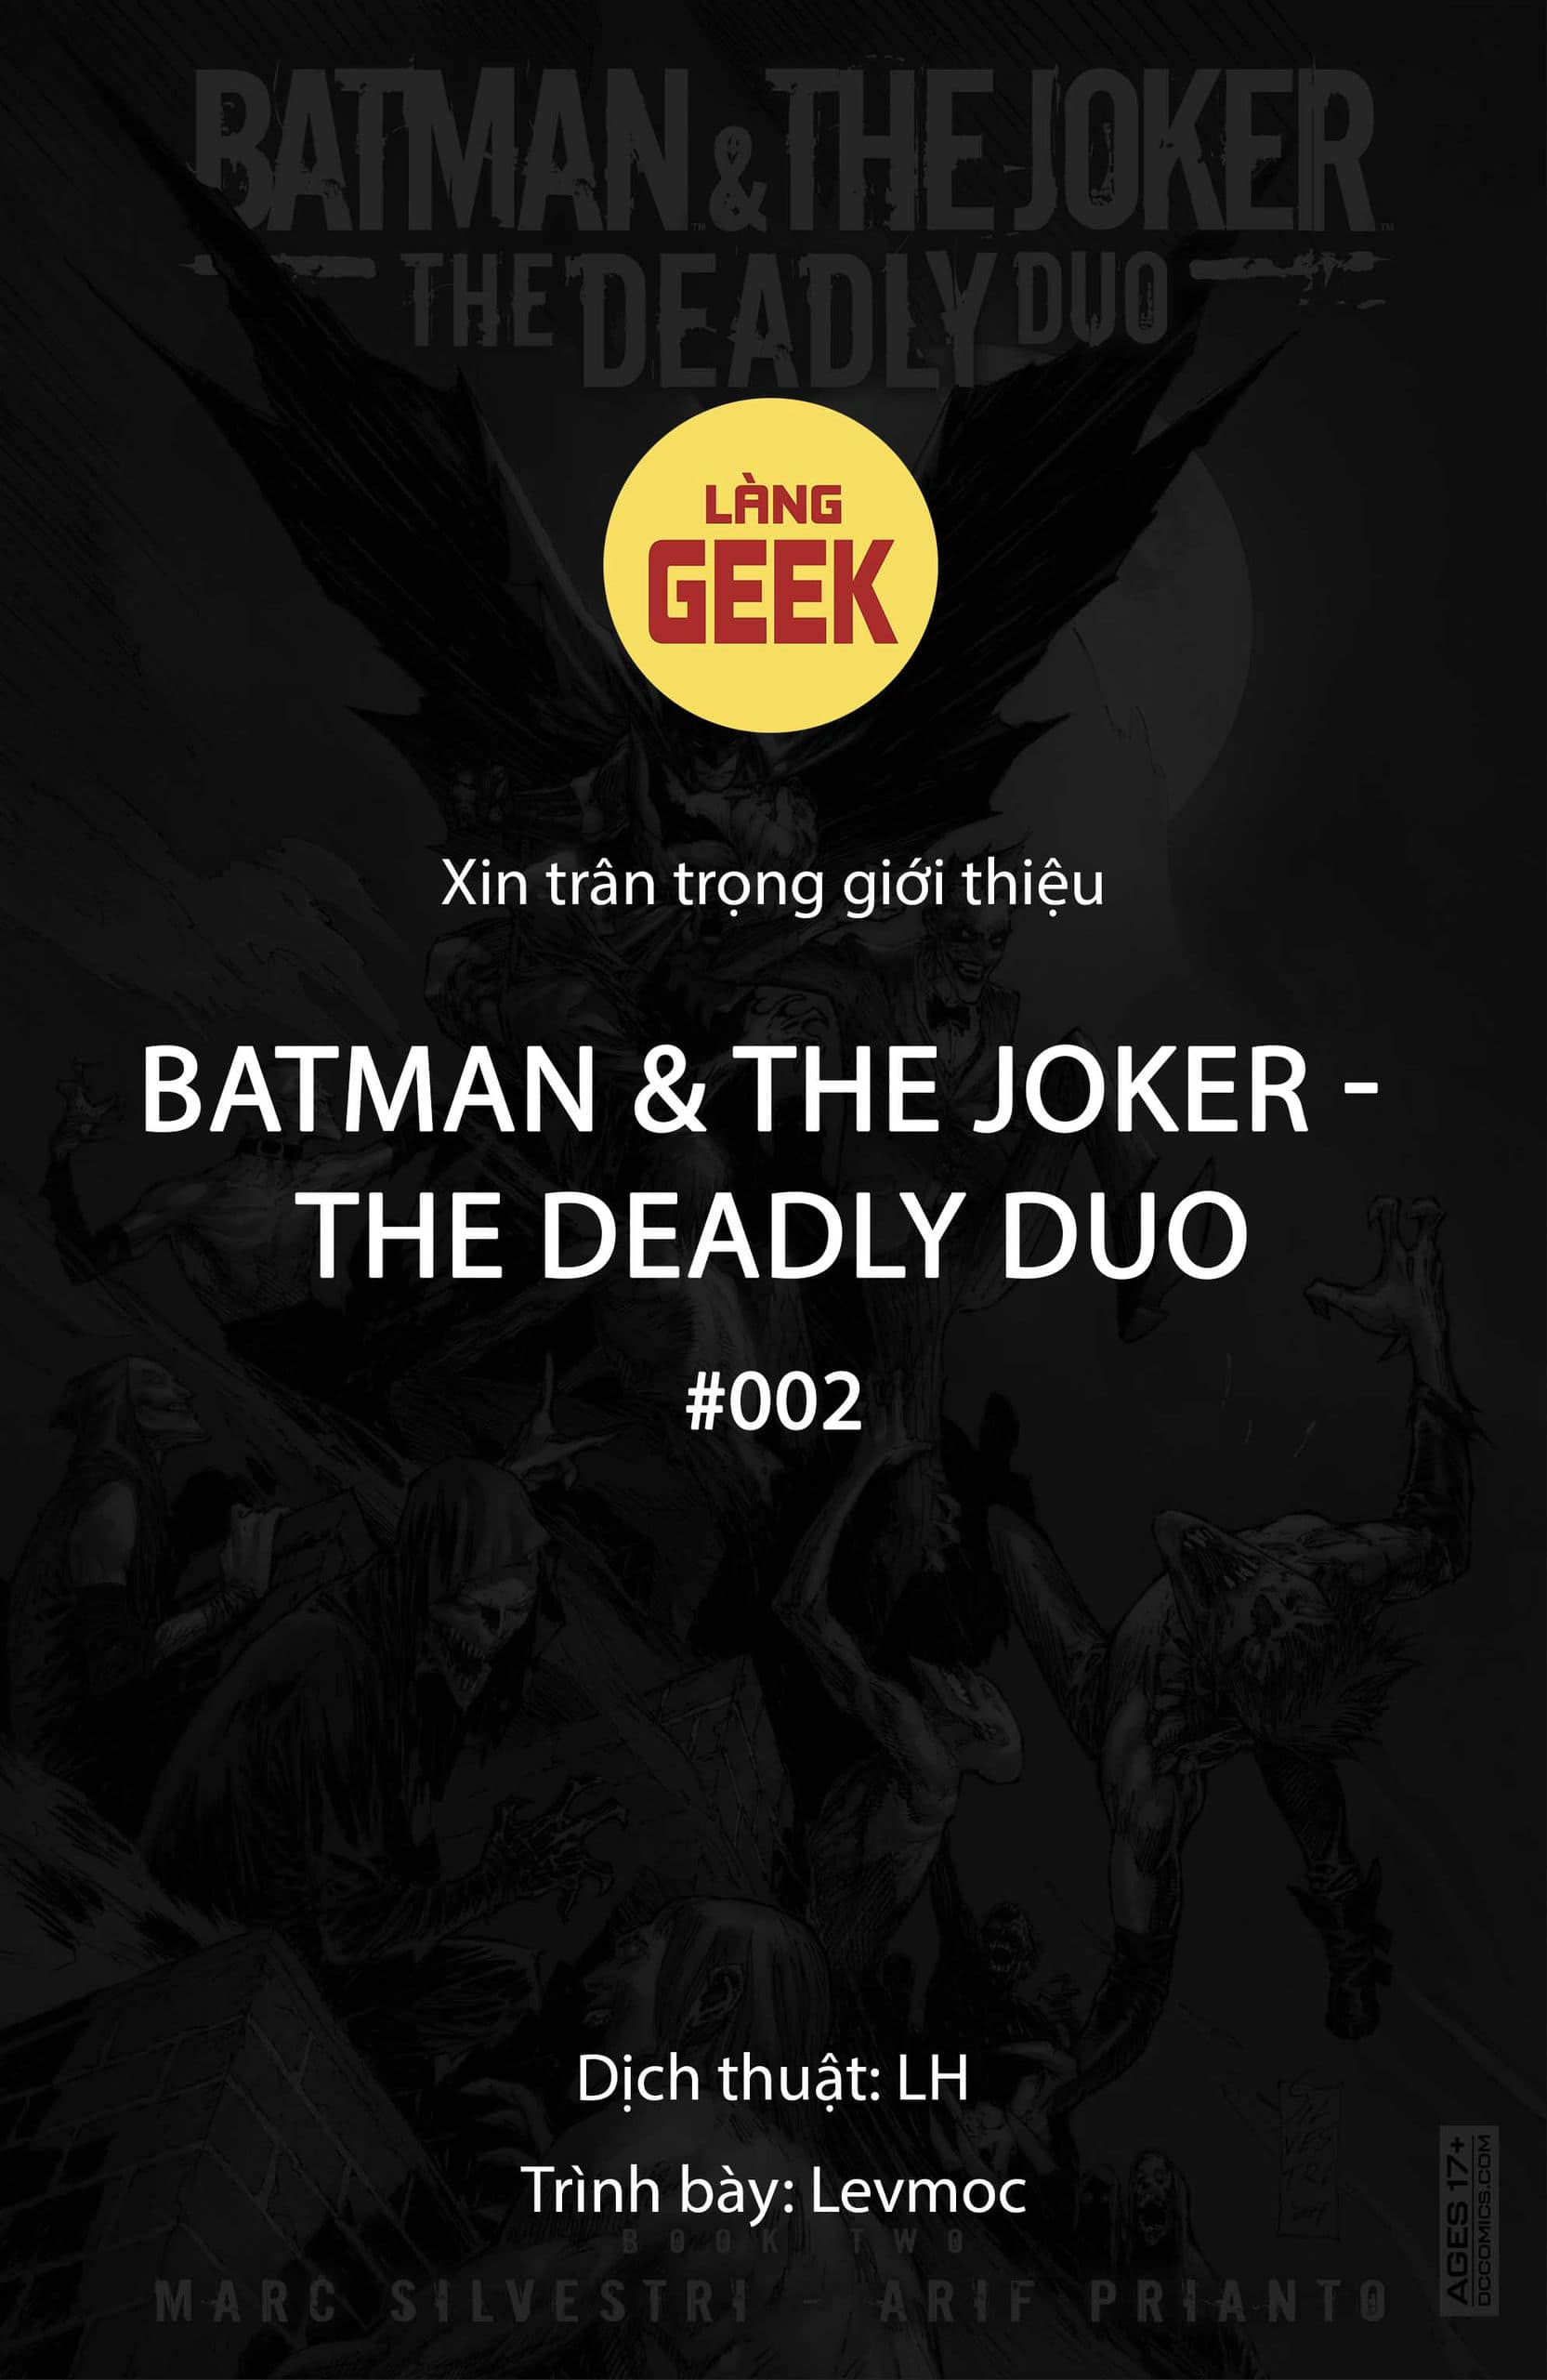 https://langgeek.net/wp-content/webpc-passthru.php?src=https://langgeek.net/wp-content/uploads/2022/12/Batman-The-Joker-The-Deadly-Duo-2022-002-001.jpg&nocache=1